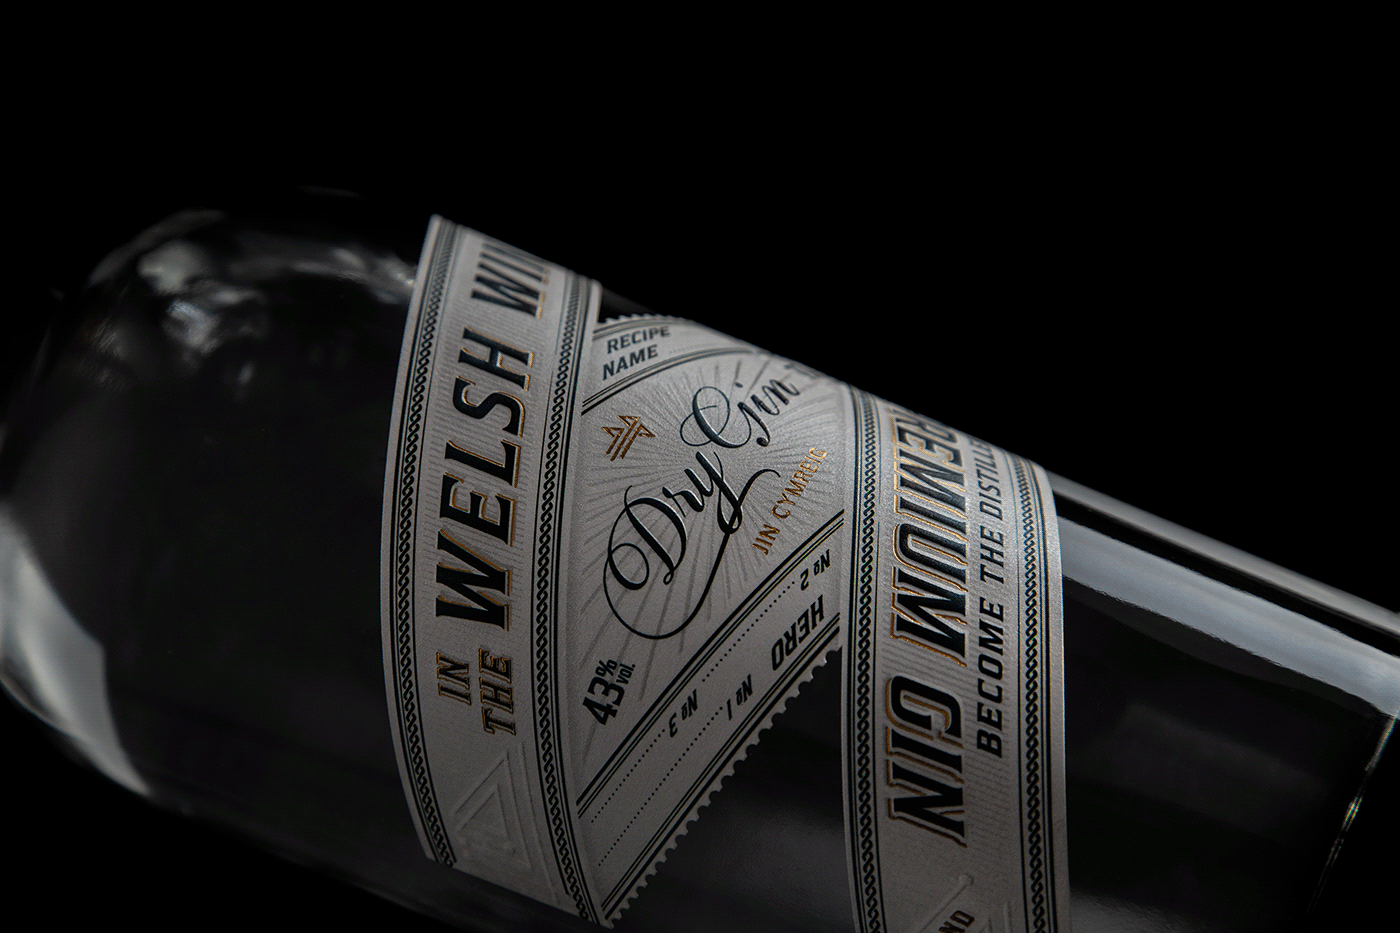 lettering bottle details gin Label label design ornaments Packaging premium Spirits